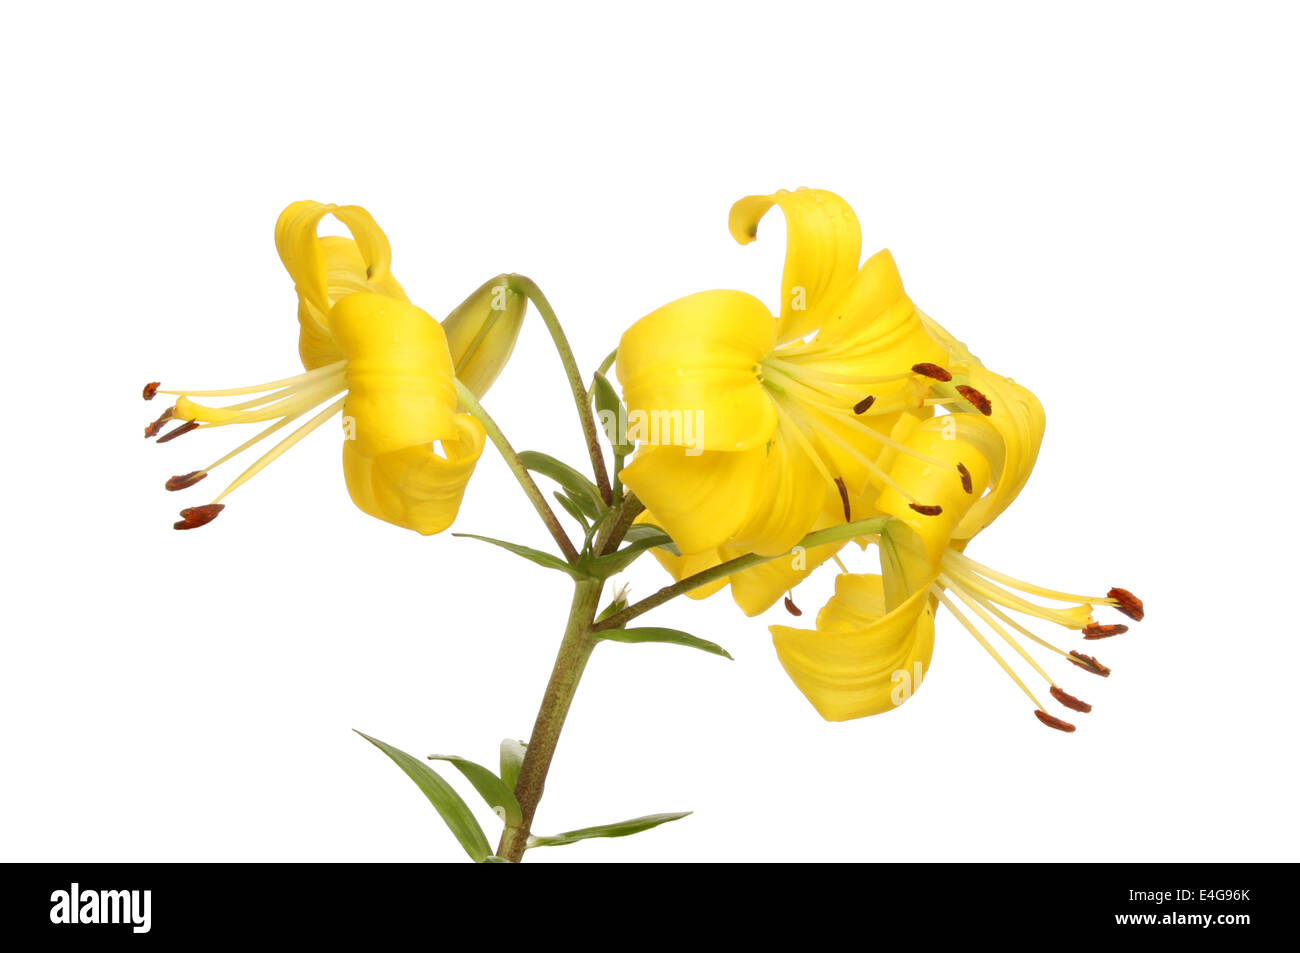 L'Asiatique jaune fleurs lys blanc isolé contre Banque D'Images